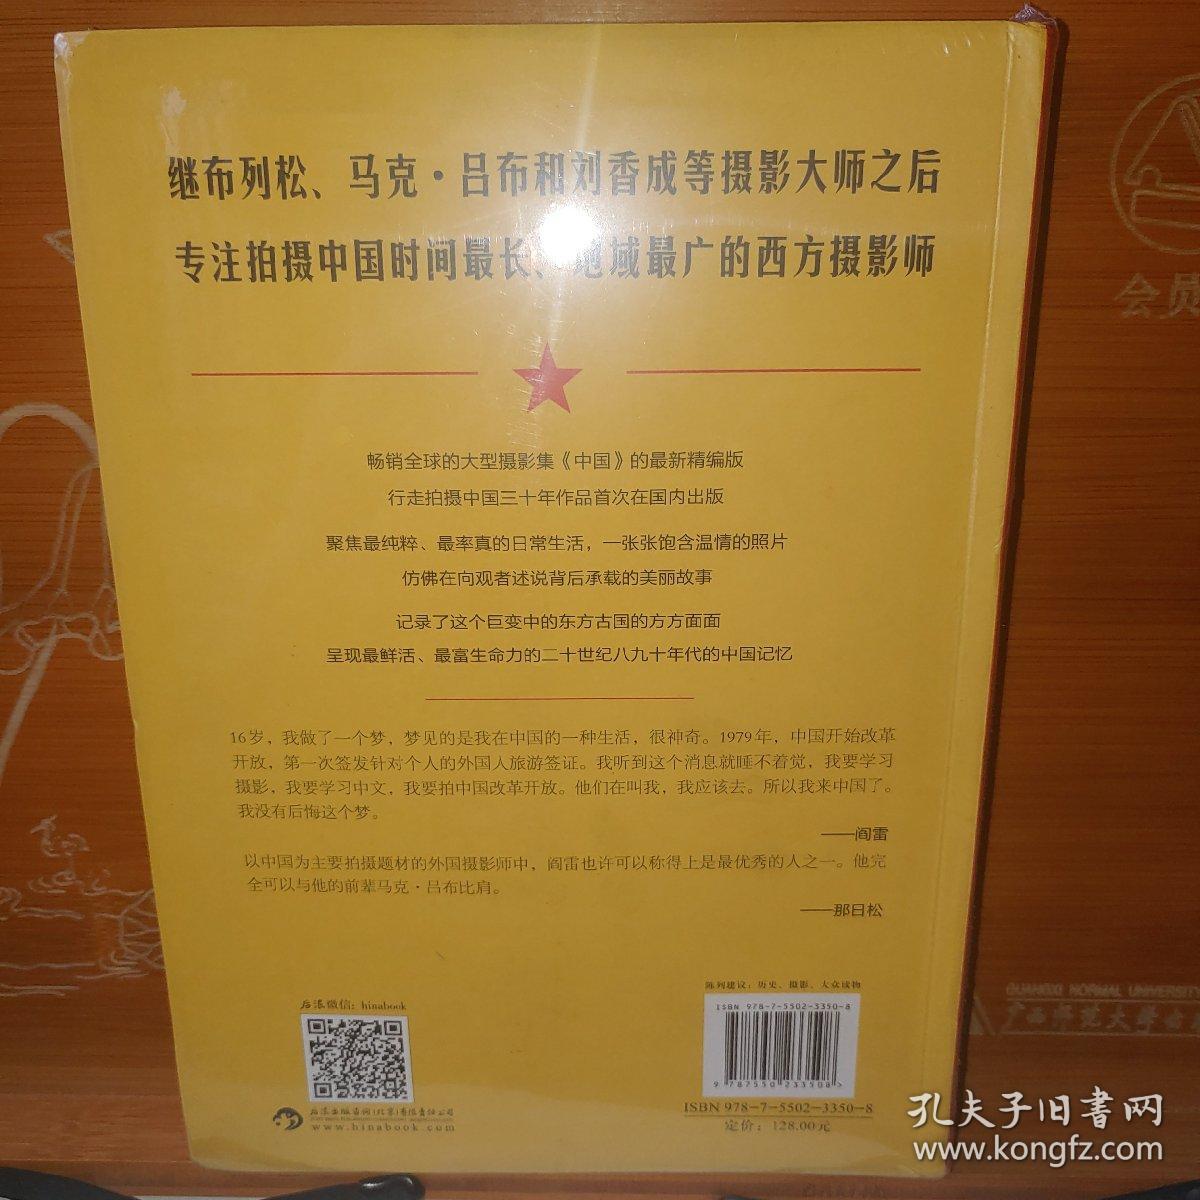 昨天的中国 [法]阎雷 北京联合出版公司 塑封新书